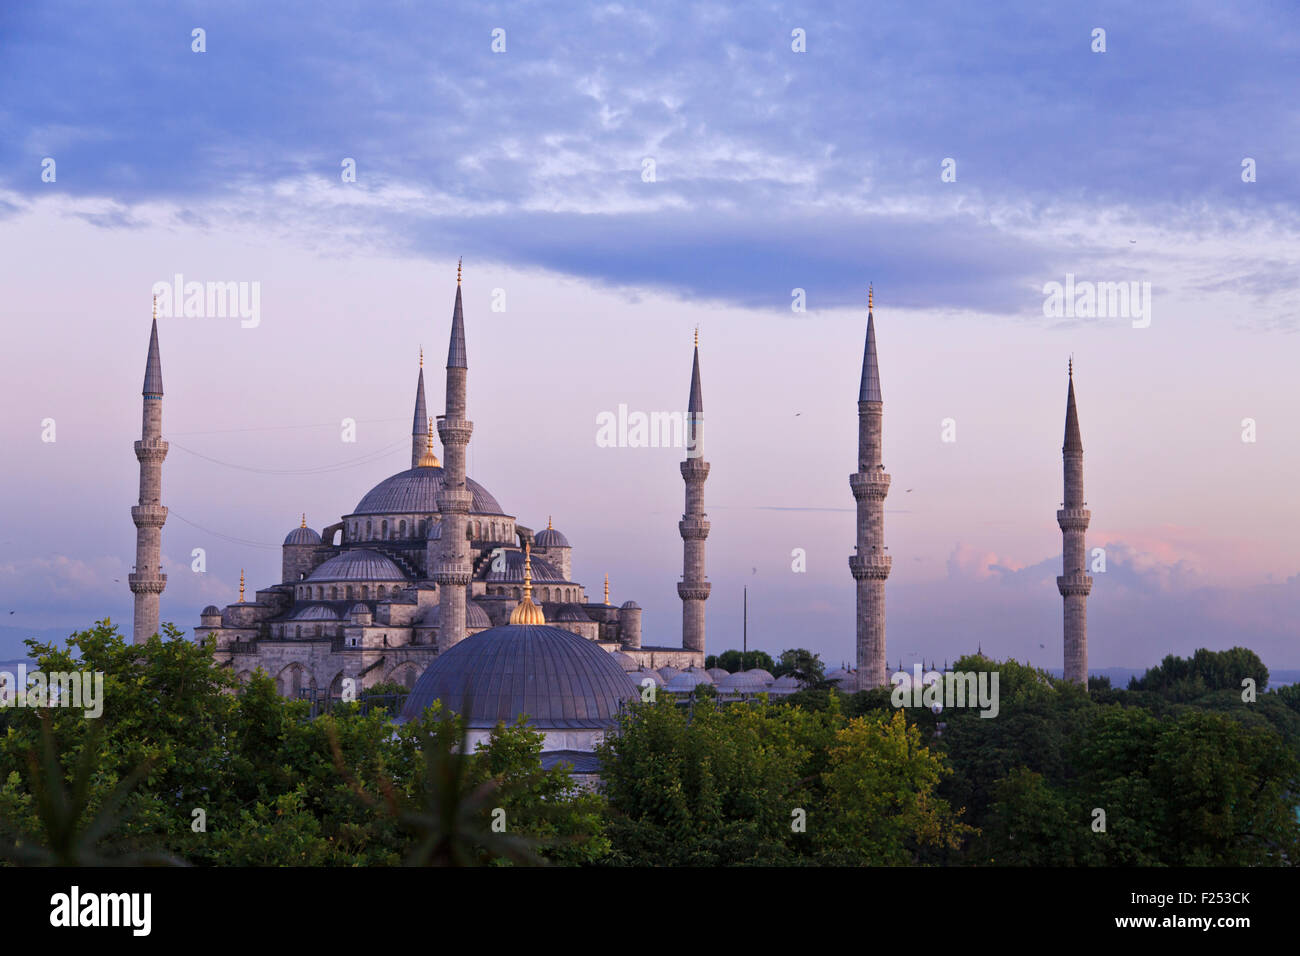 Blaue Moschee, auch bekannt als Sultanahmet Moschee durch das Gebet bei Sonnenuntergang in Istanbul, Türkei Stockfoto